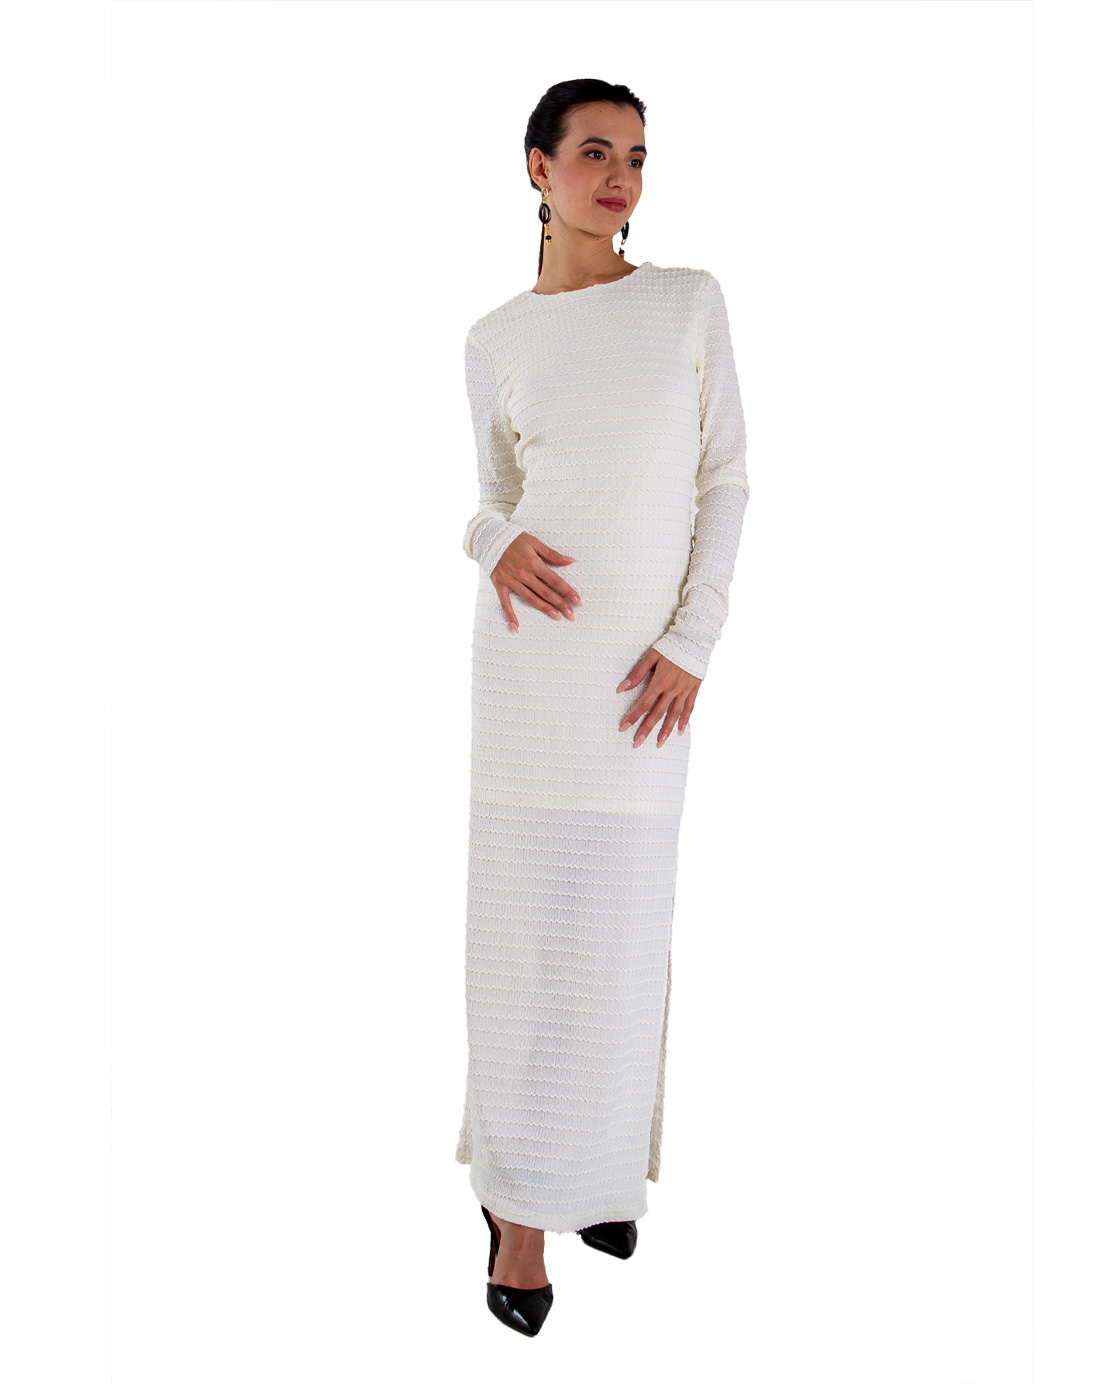 White knit long dress